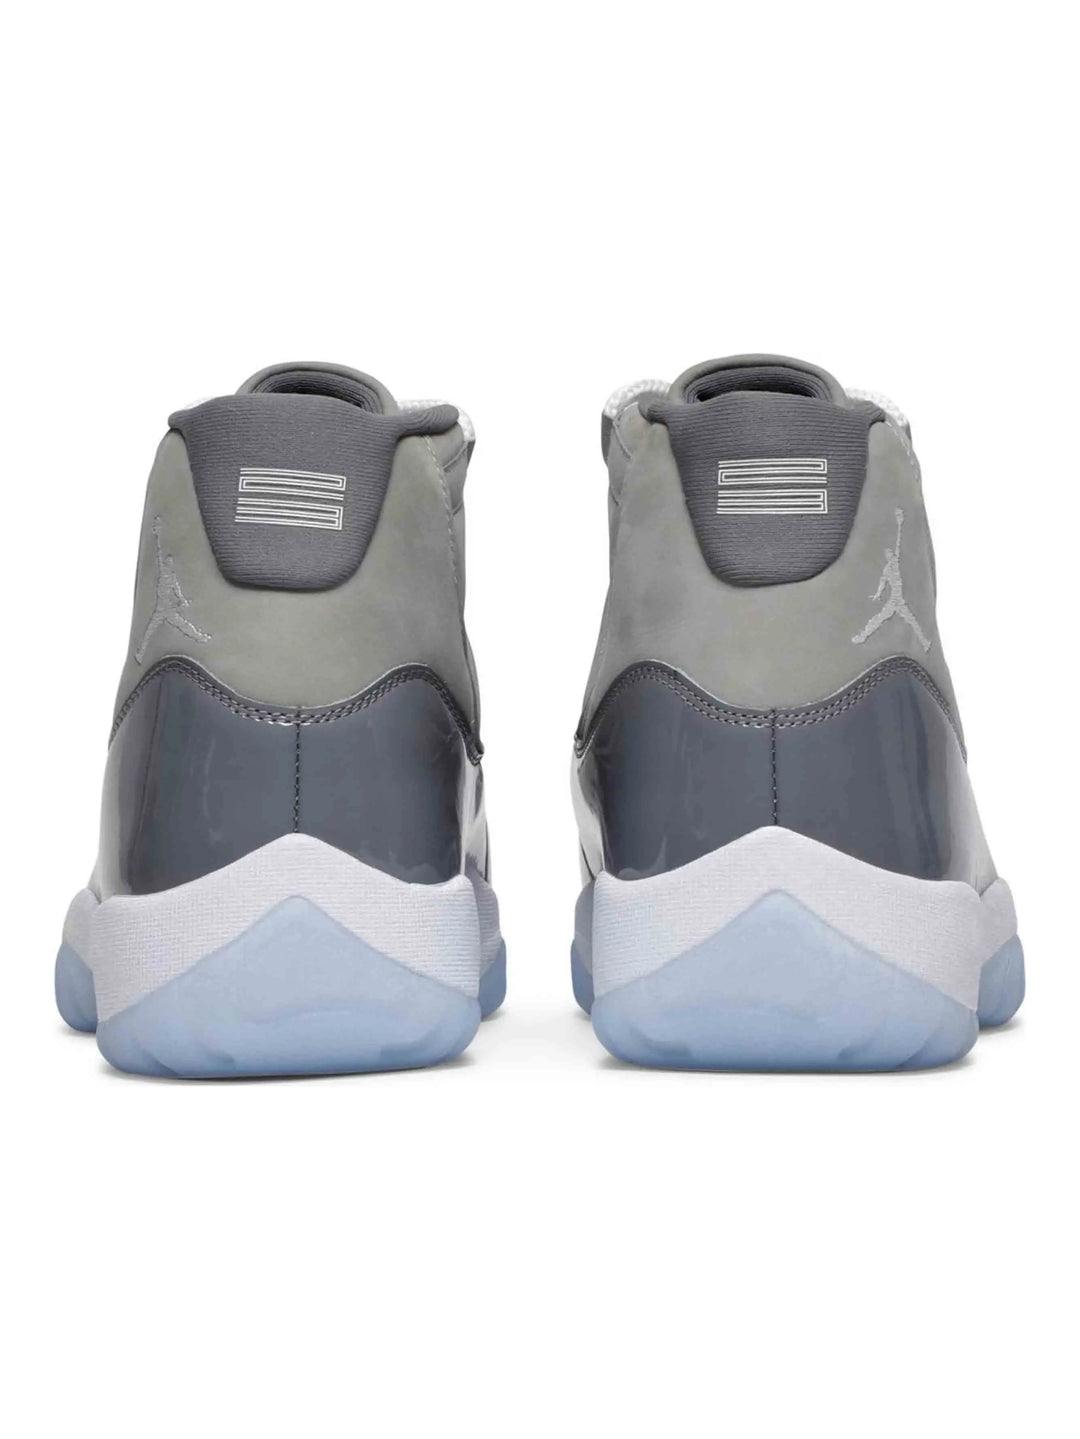 Nike Air Jordan 11 Retro Cool Grey (2021) Prior